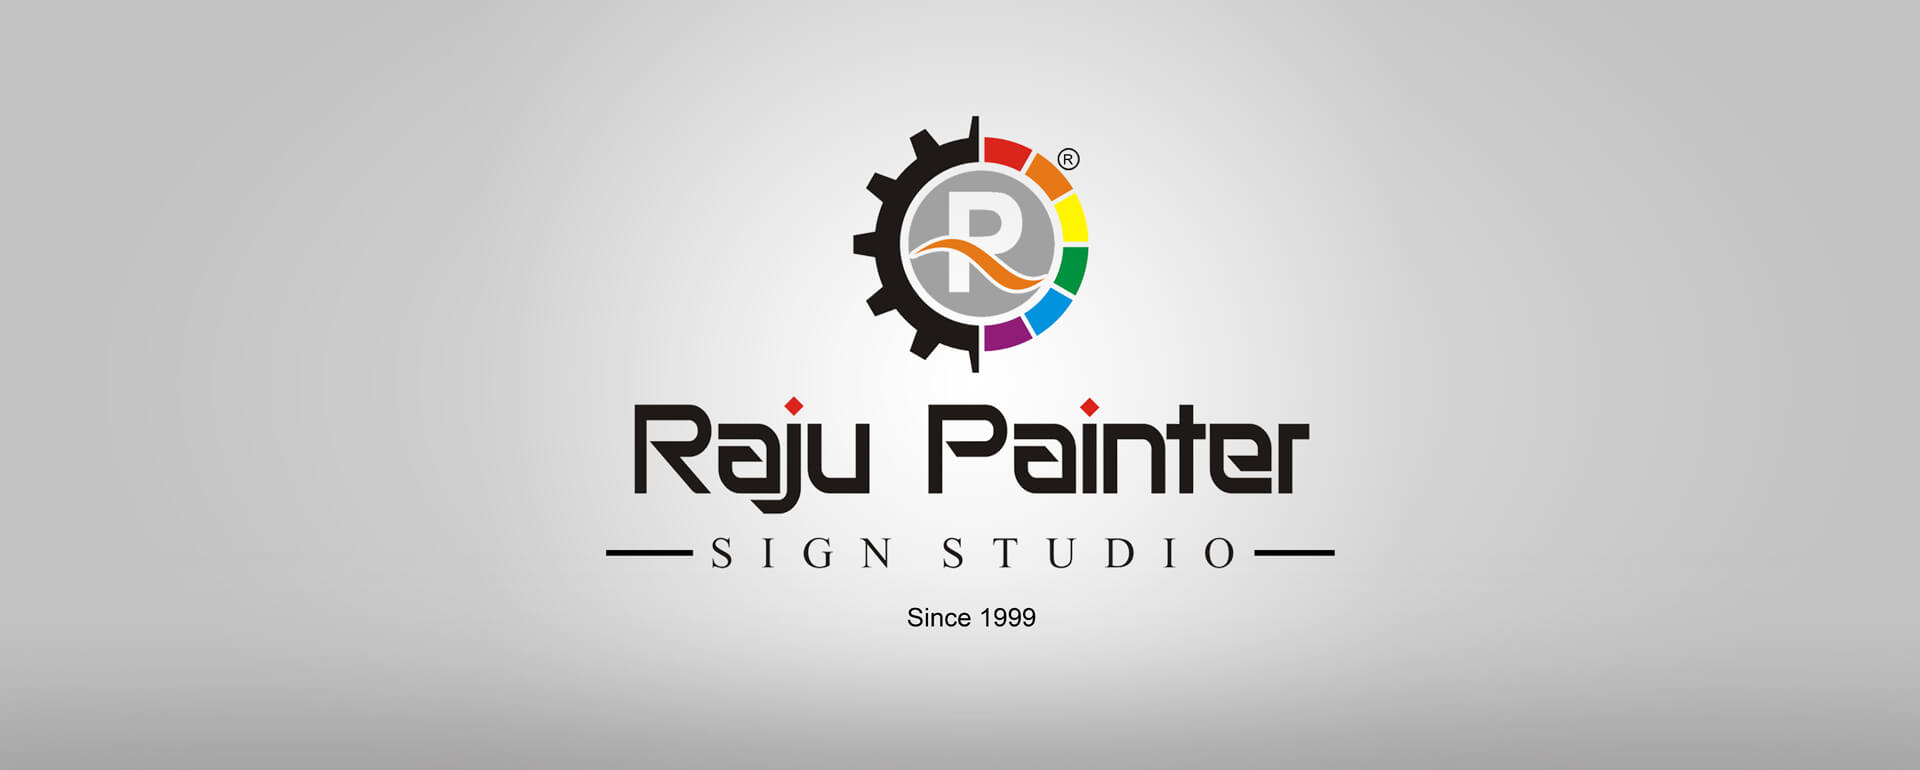 Raju Painter